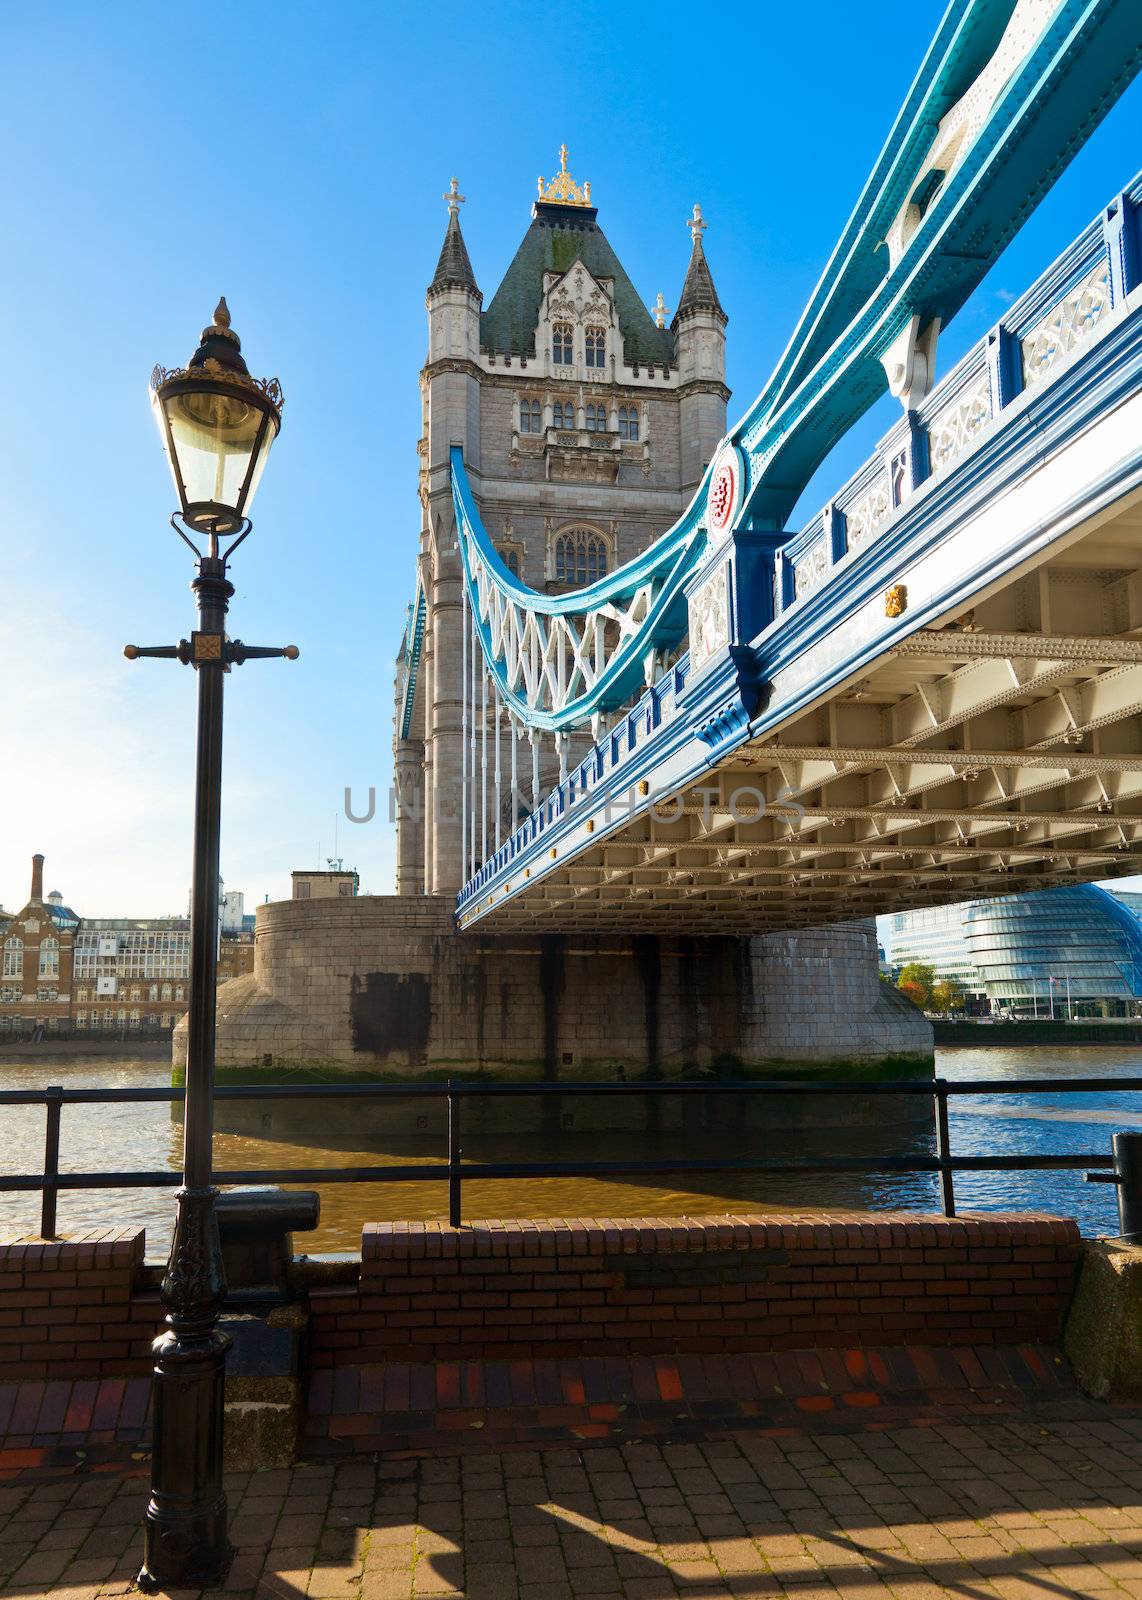 Tower Bridge in London by naumoid